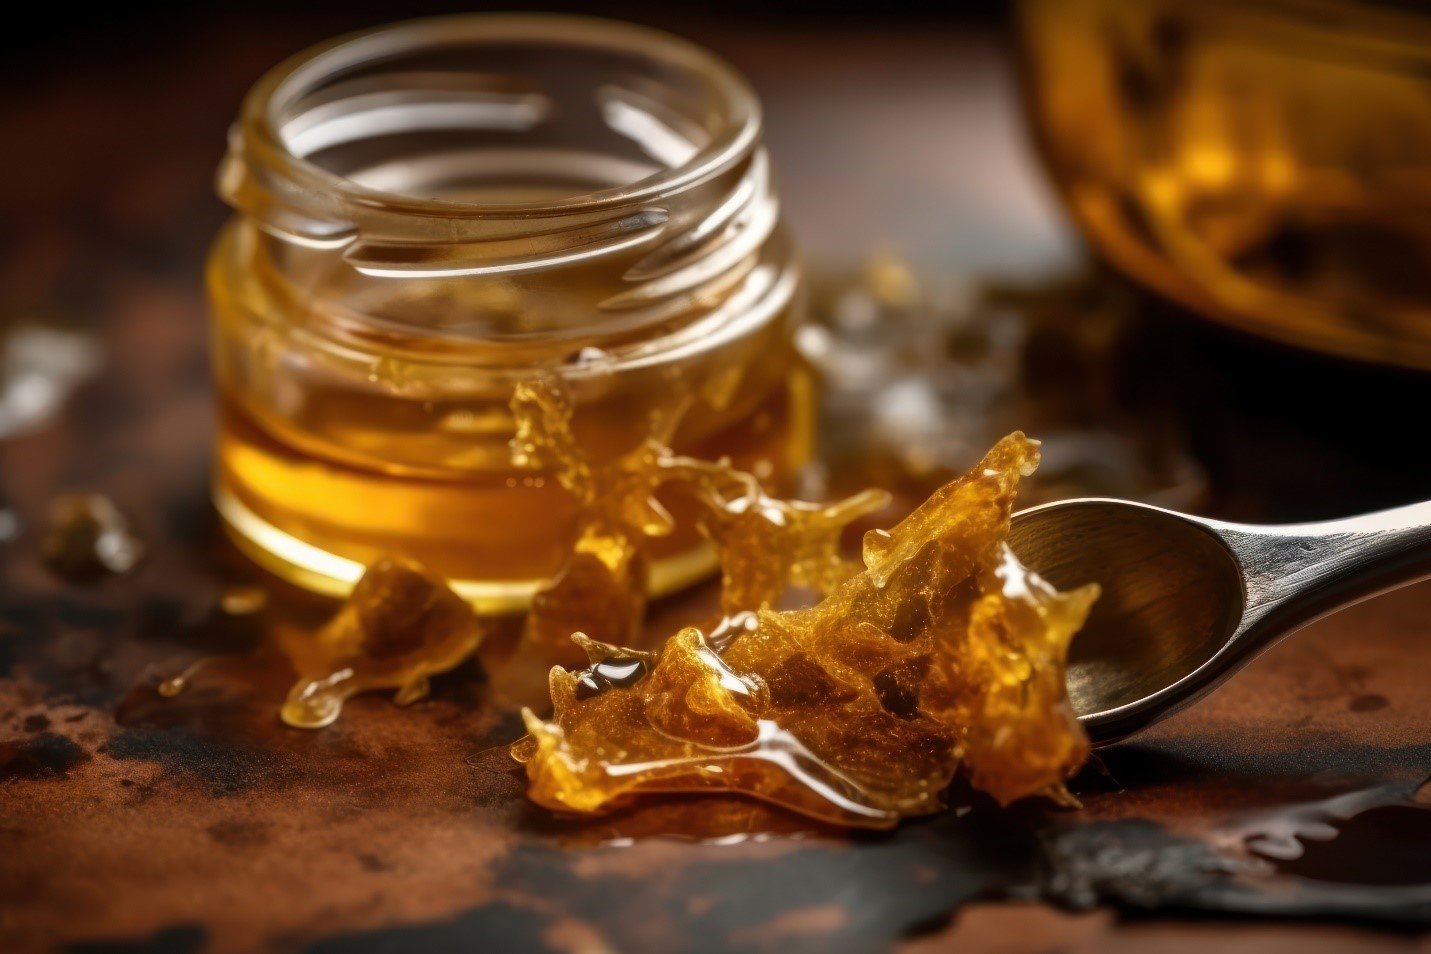 Hash Oil - Honey Brands